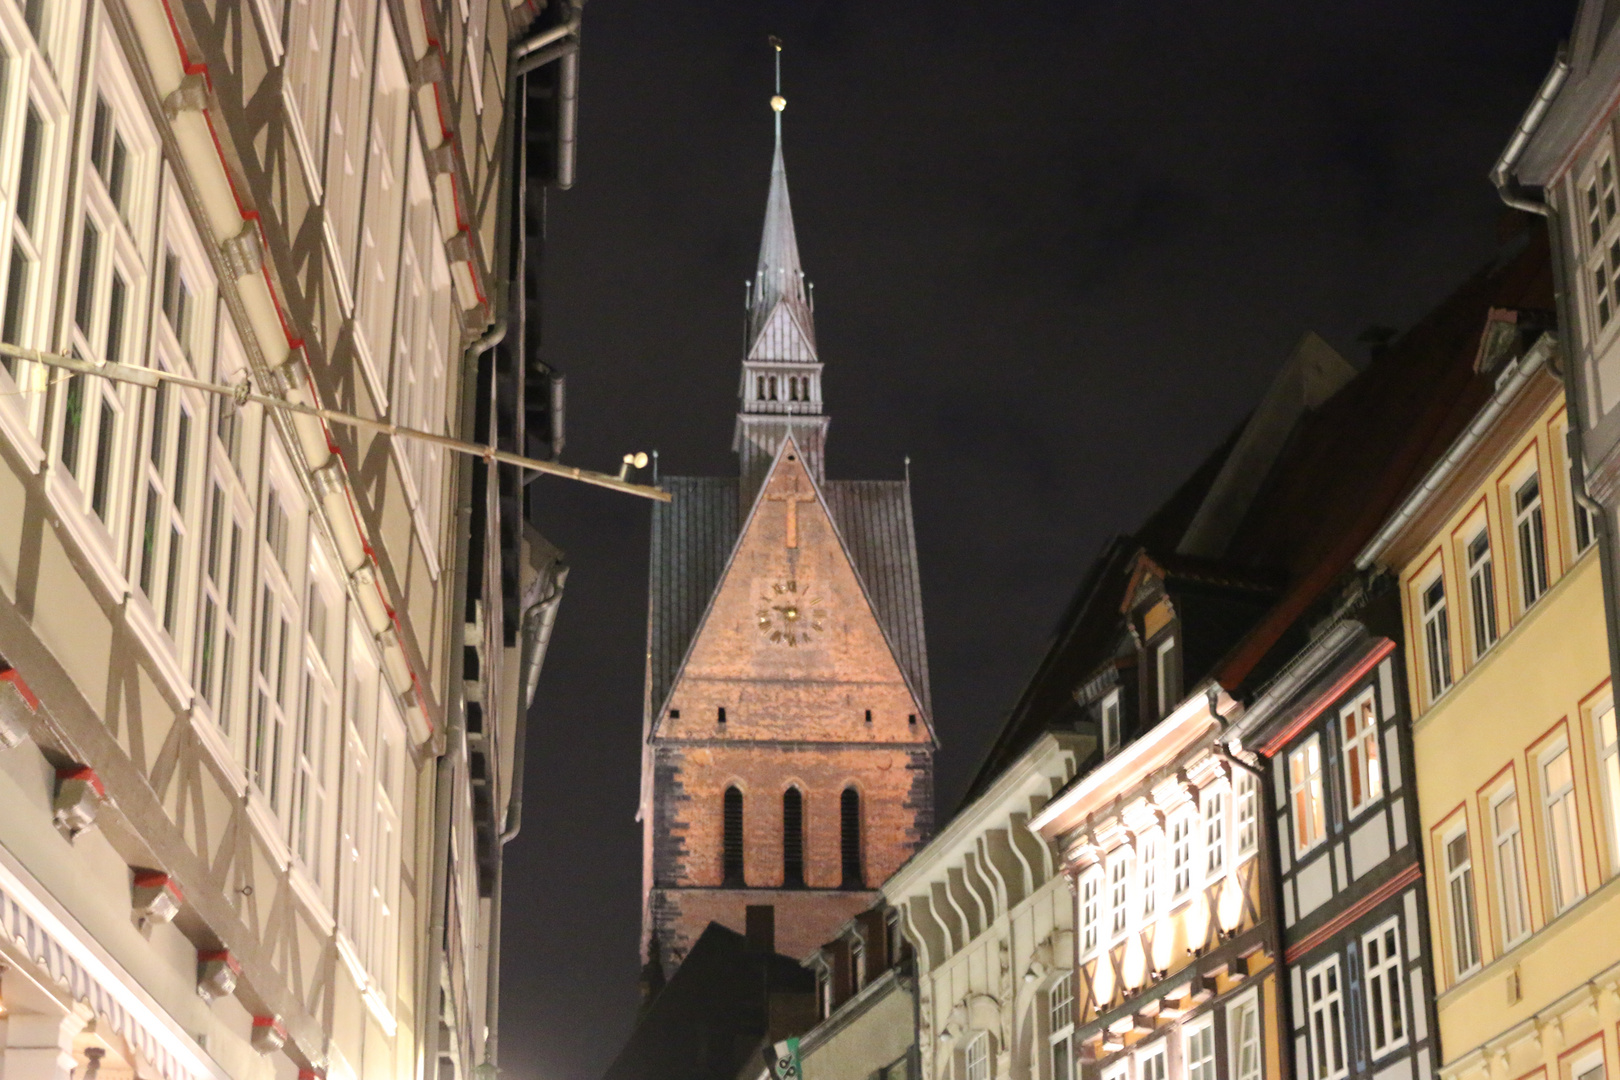 Marktkirche in Hannover